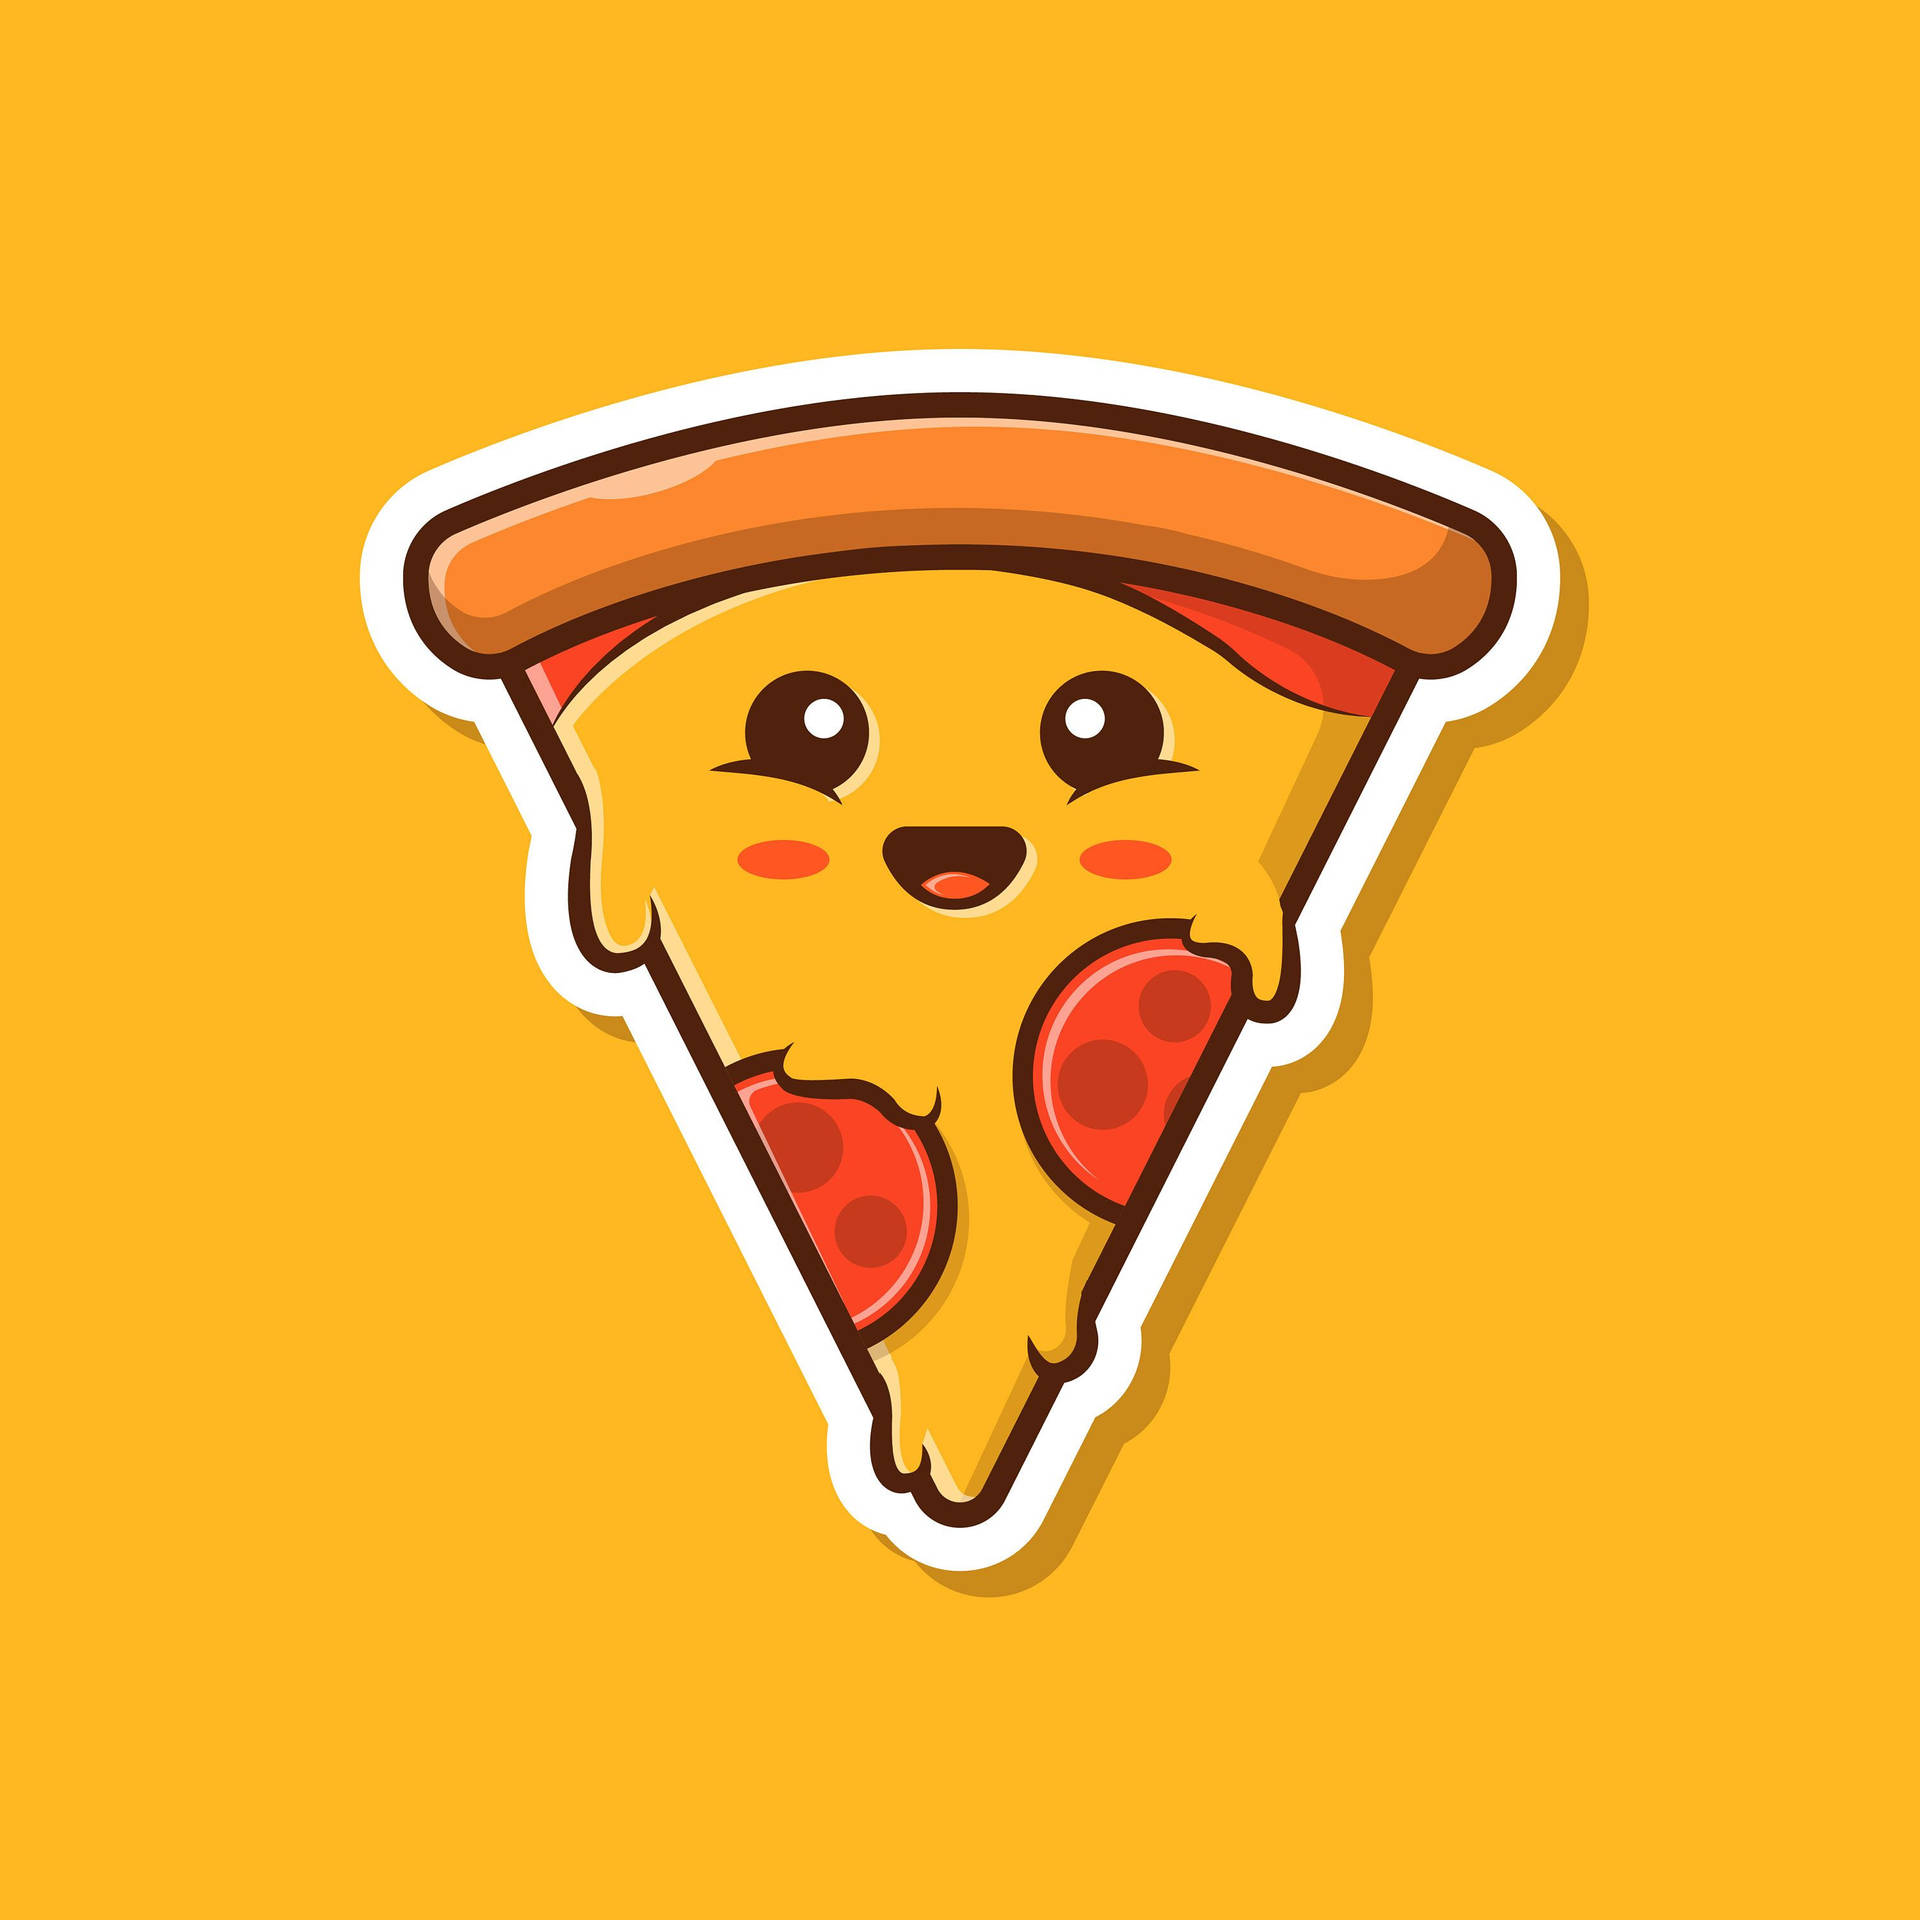 Download Cute Pizza Art Wallpaper 